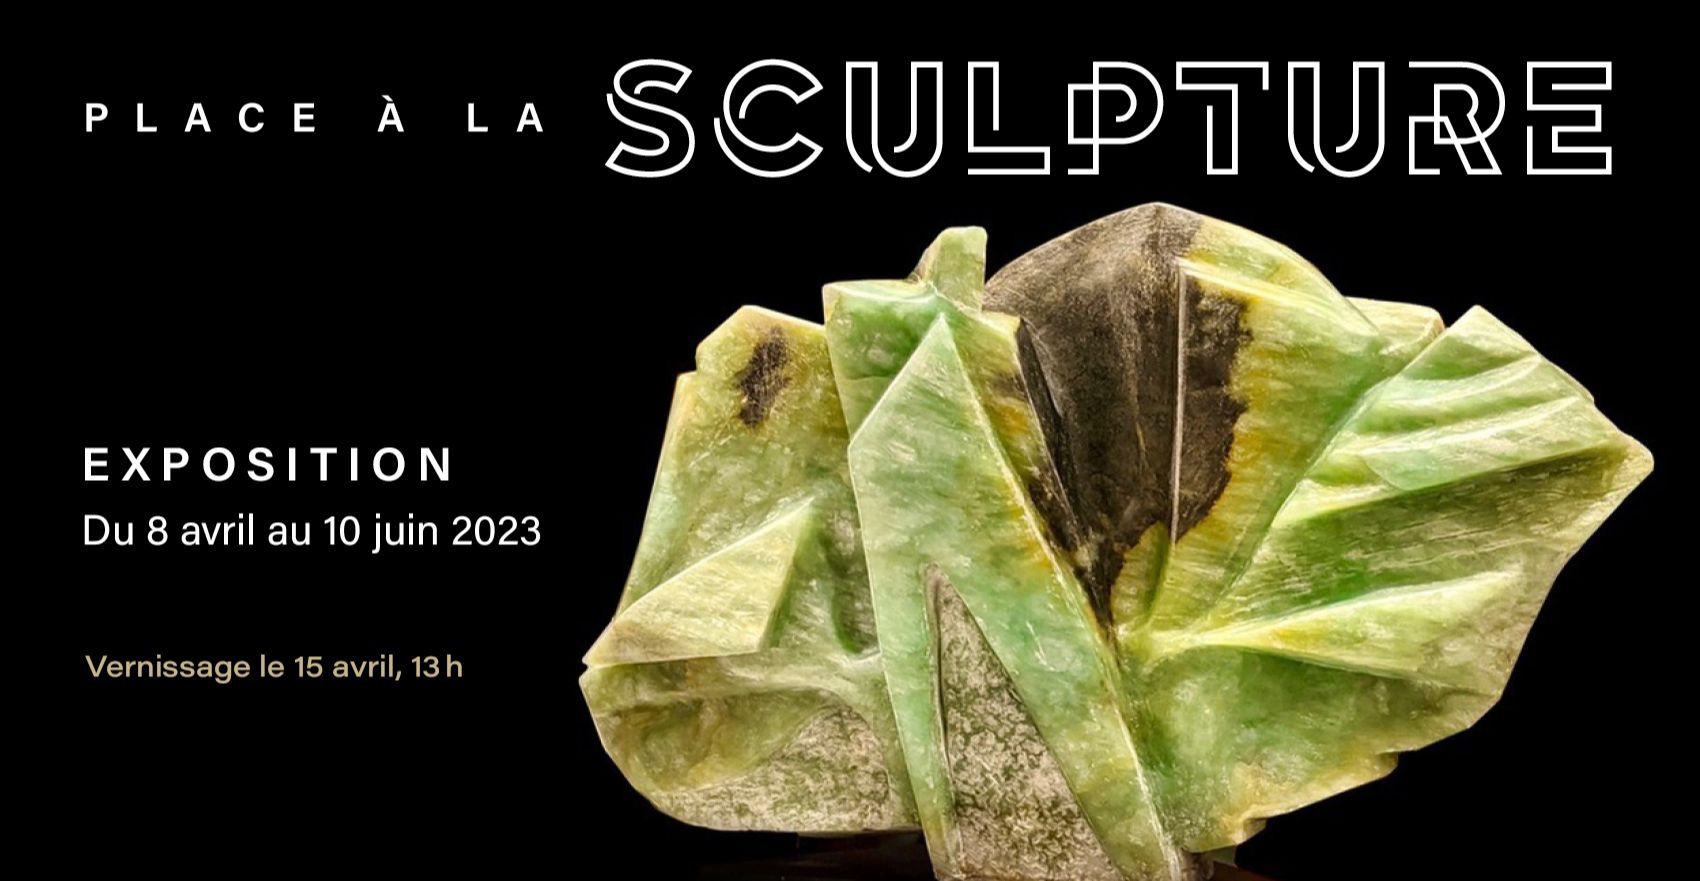 Exposition Place à la sculpture 2023